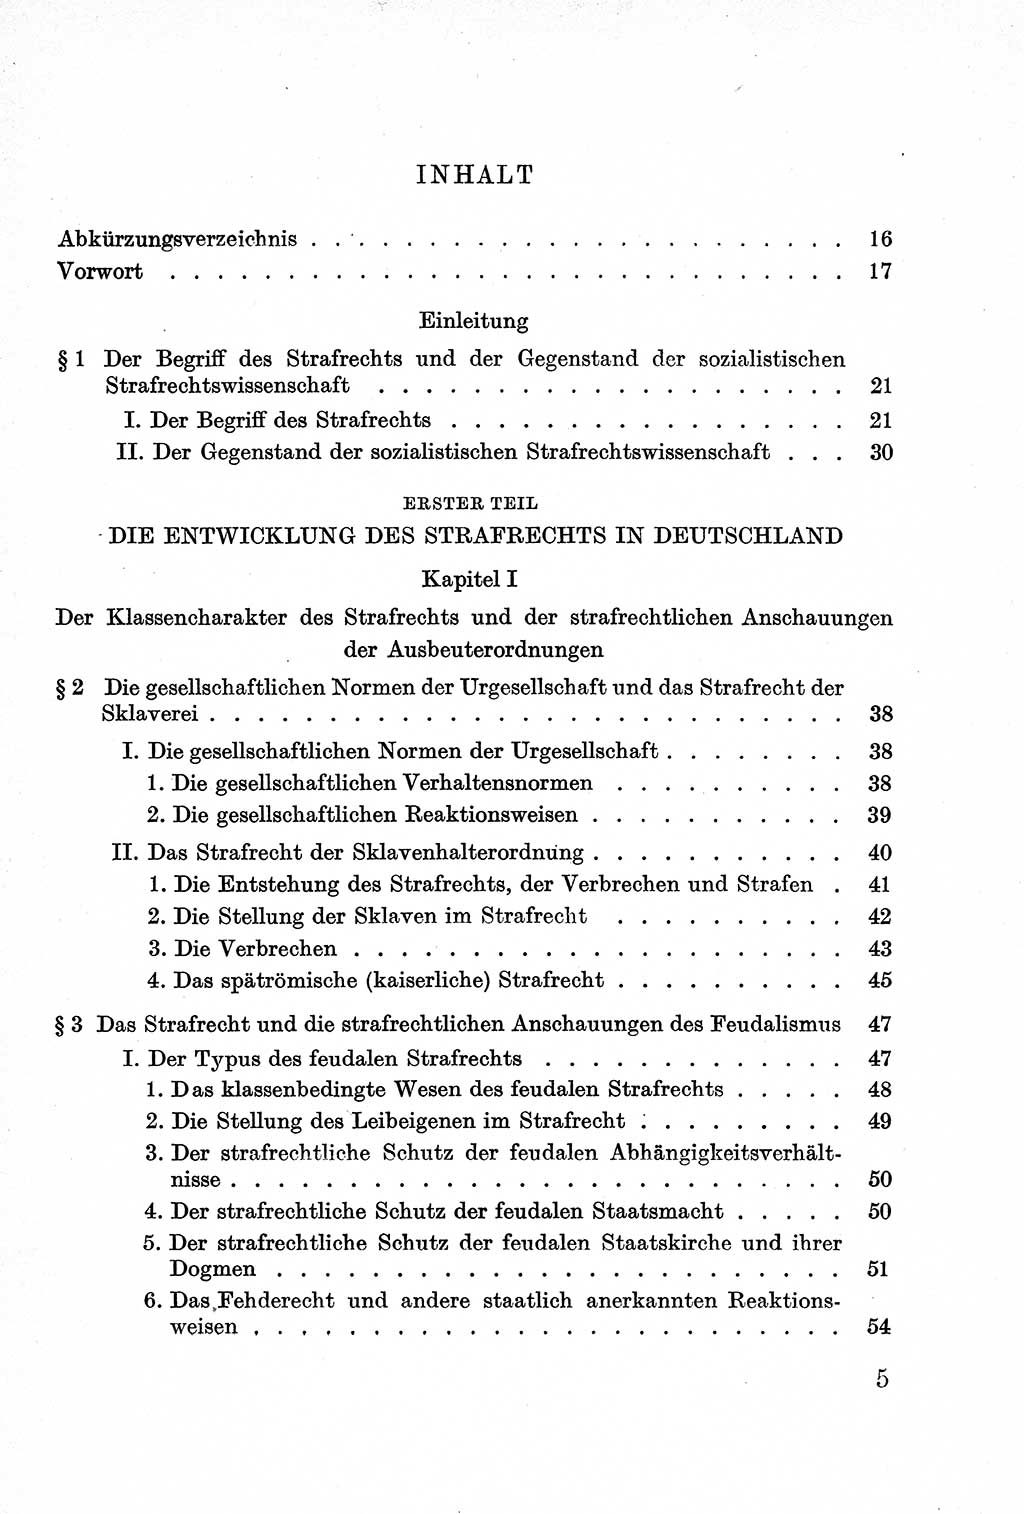 Lehrbuch des Strafrechts der Deutschen Demokratischen Republik (DDR), Allgemeiner Teil 1957, Seite 5 (Lb. Strafr. DDR AT 1957, S. 5)